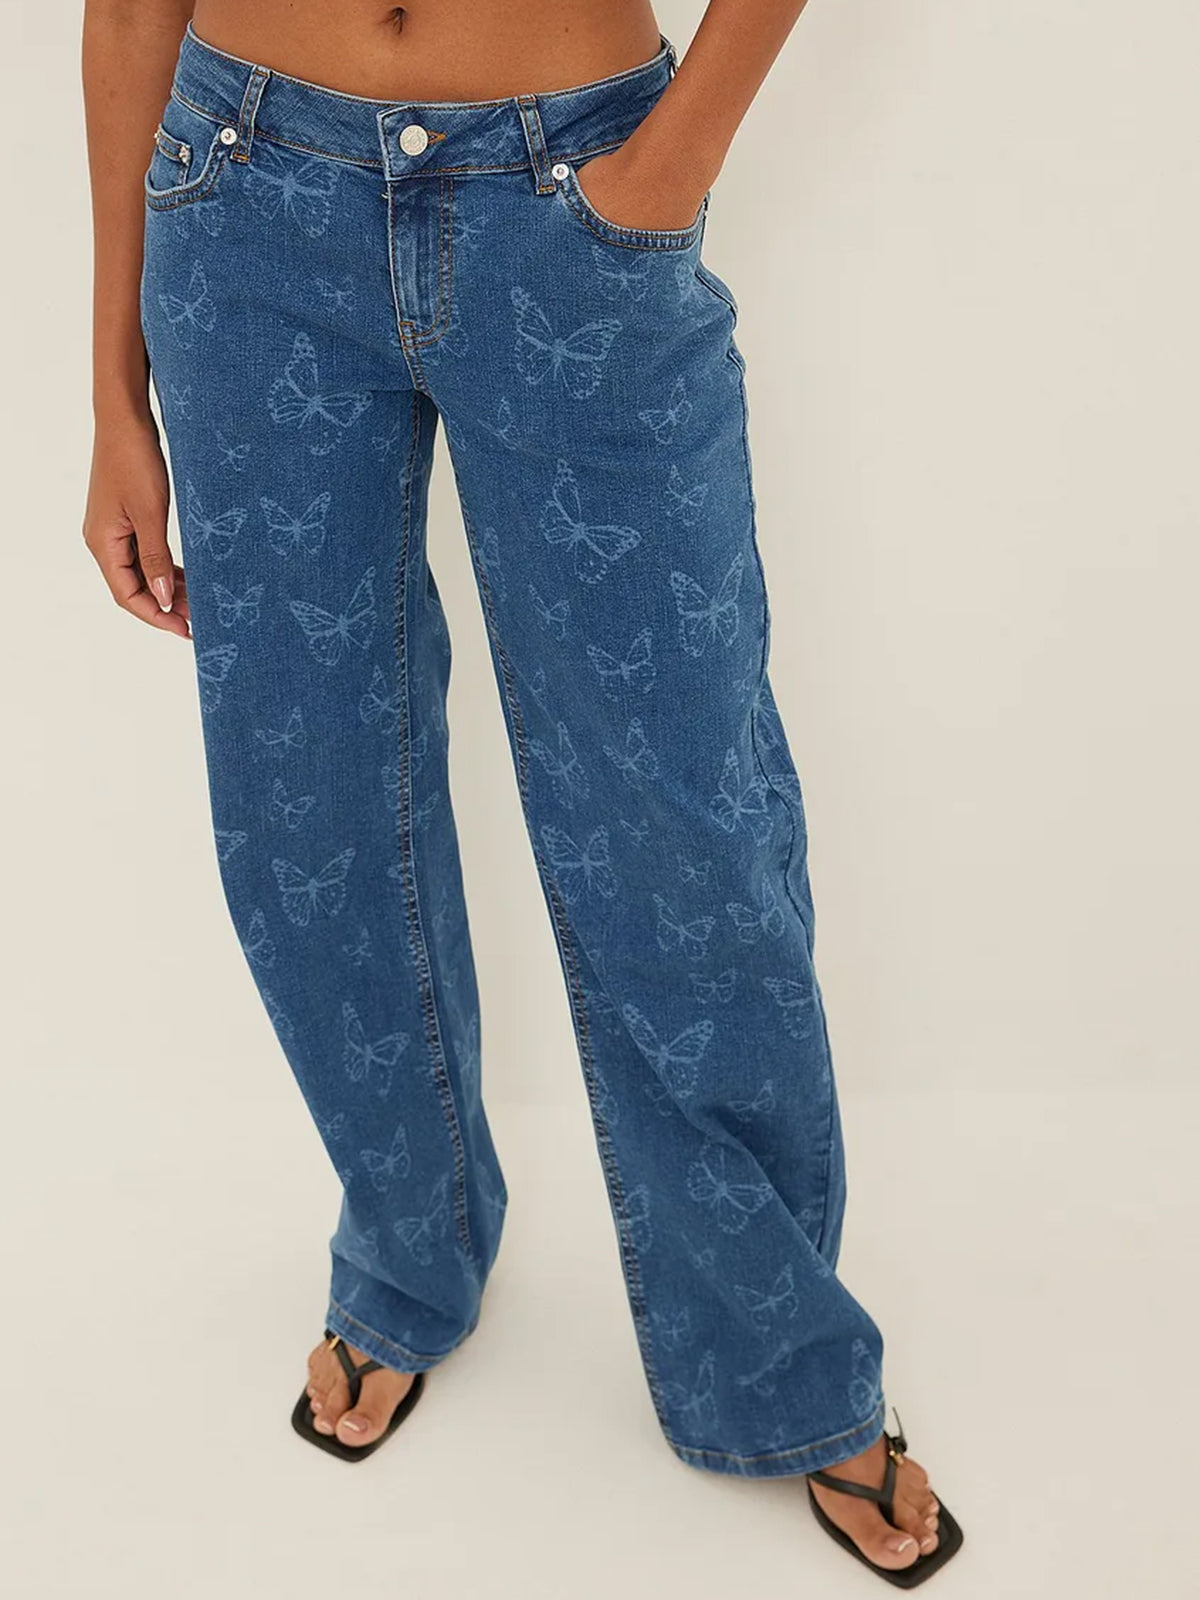 מכנסי ג'ינס בגזרה נמוכה עם הדפס פרפרים- NA-KD|נייקד